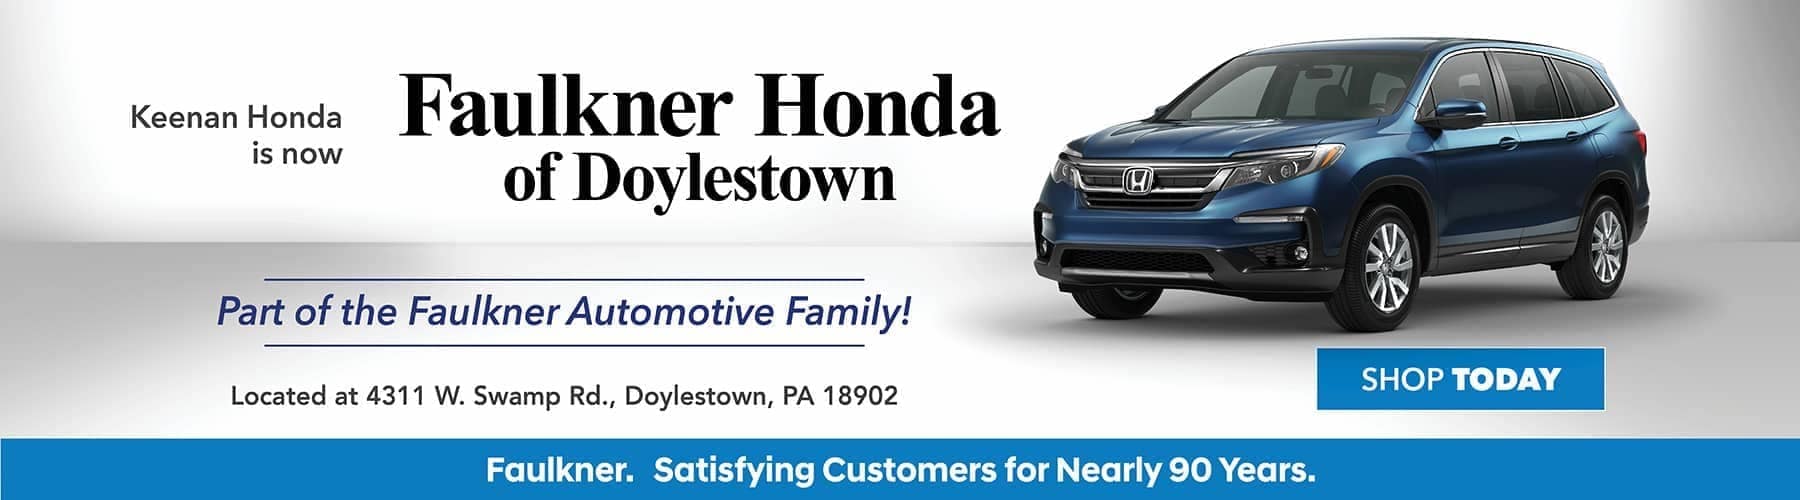 Faulkner Honda of Doylestown